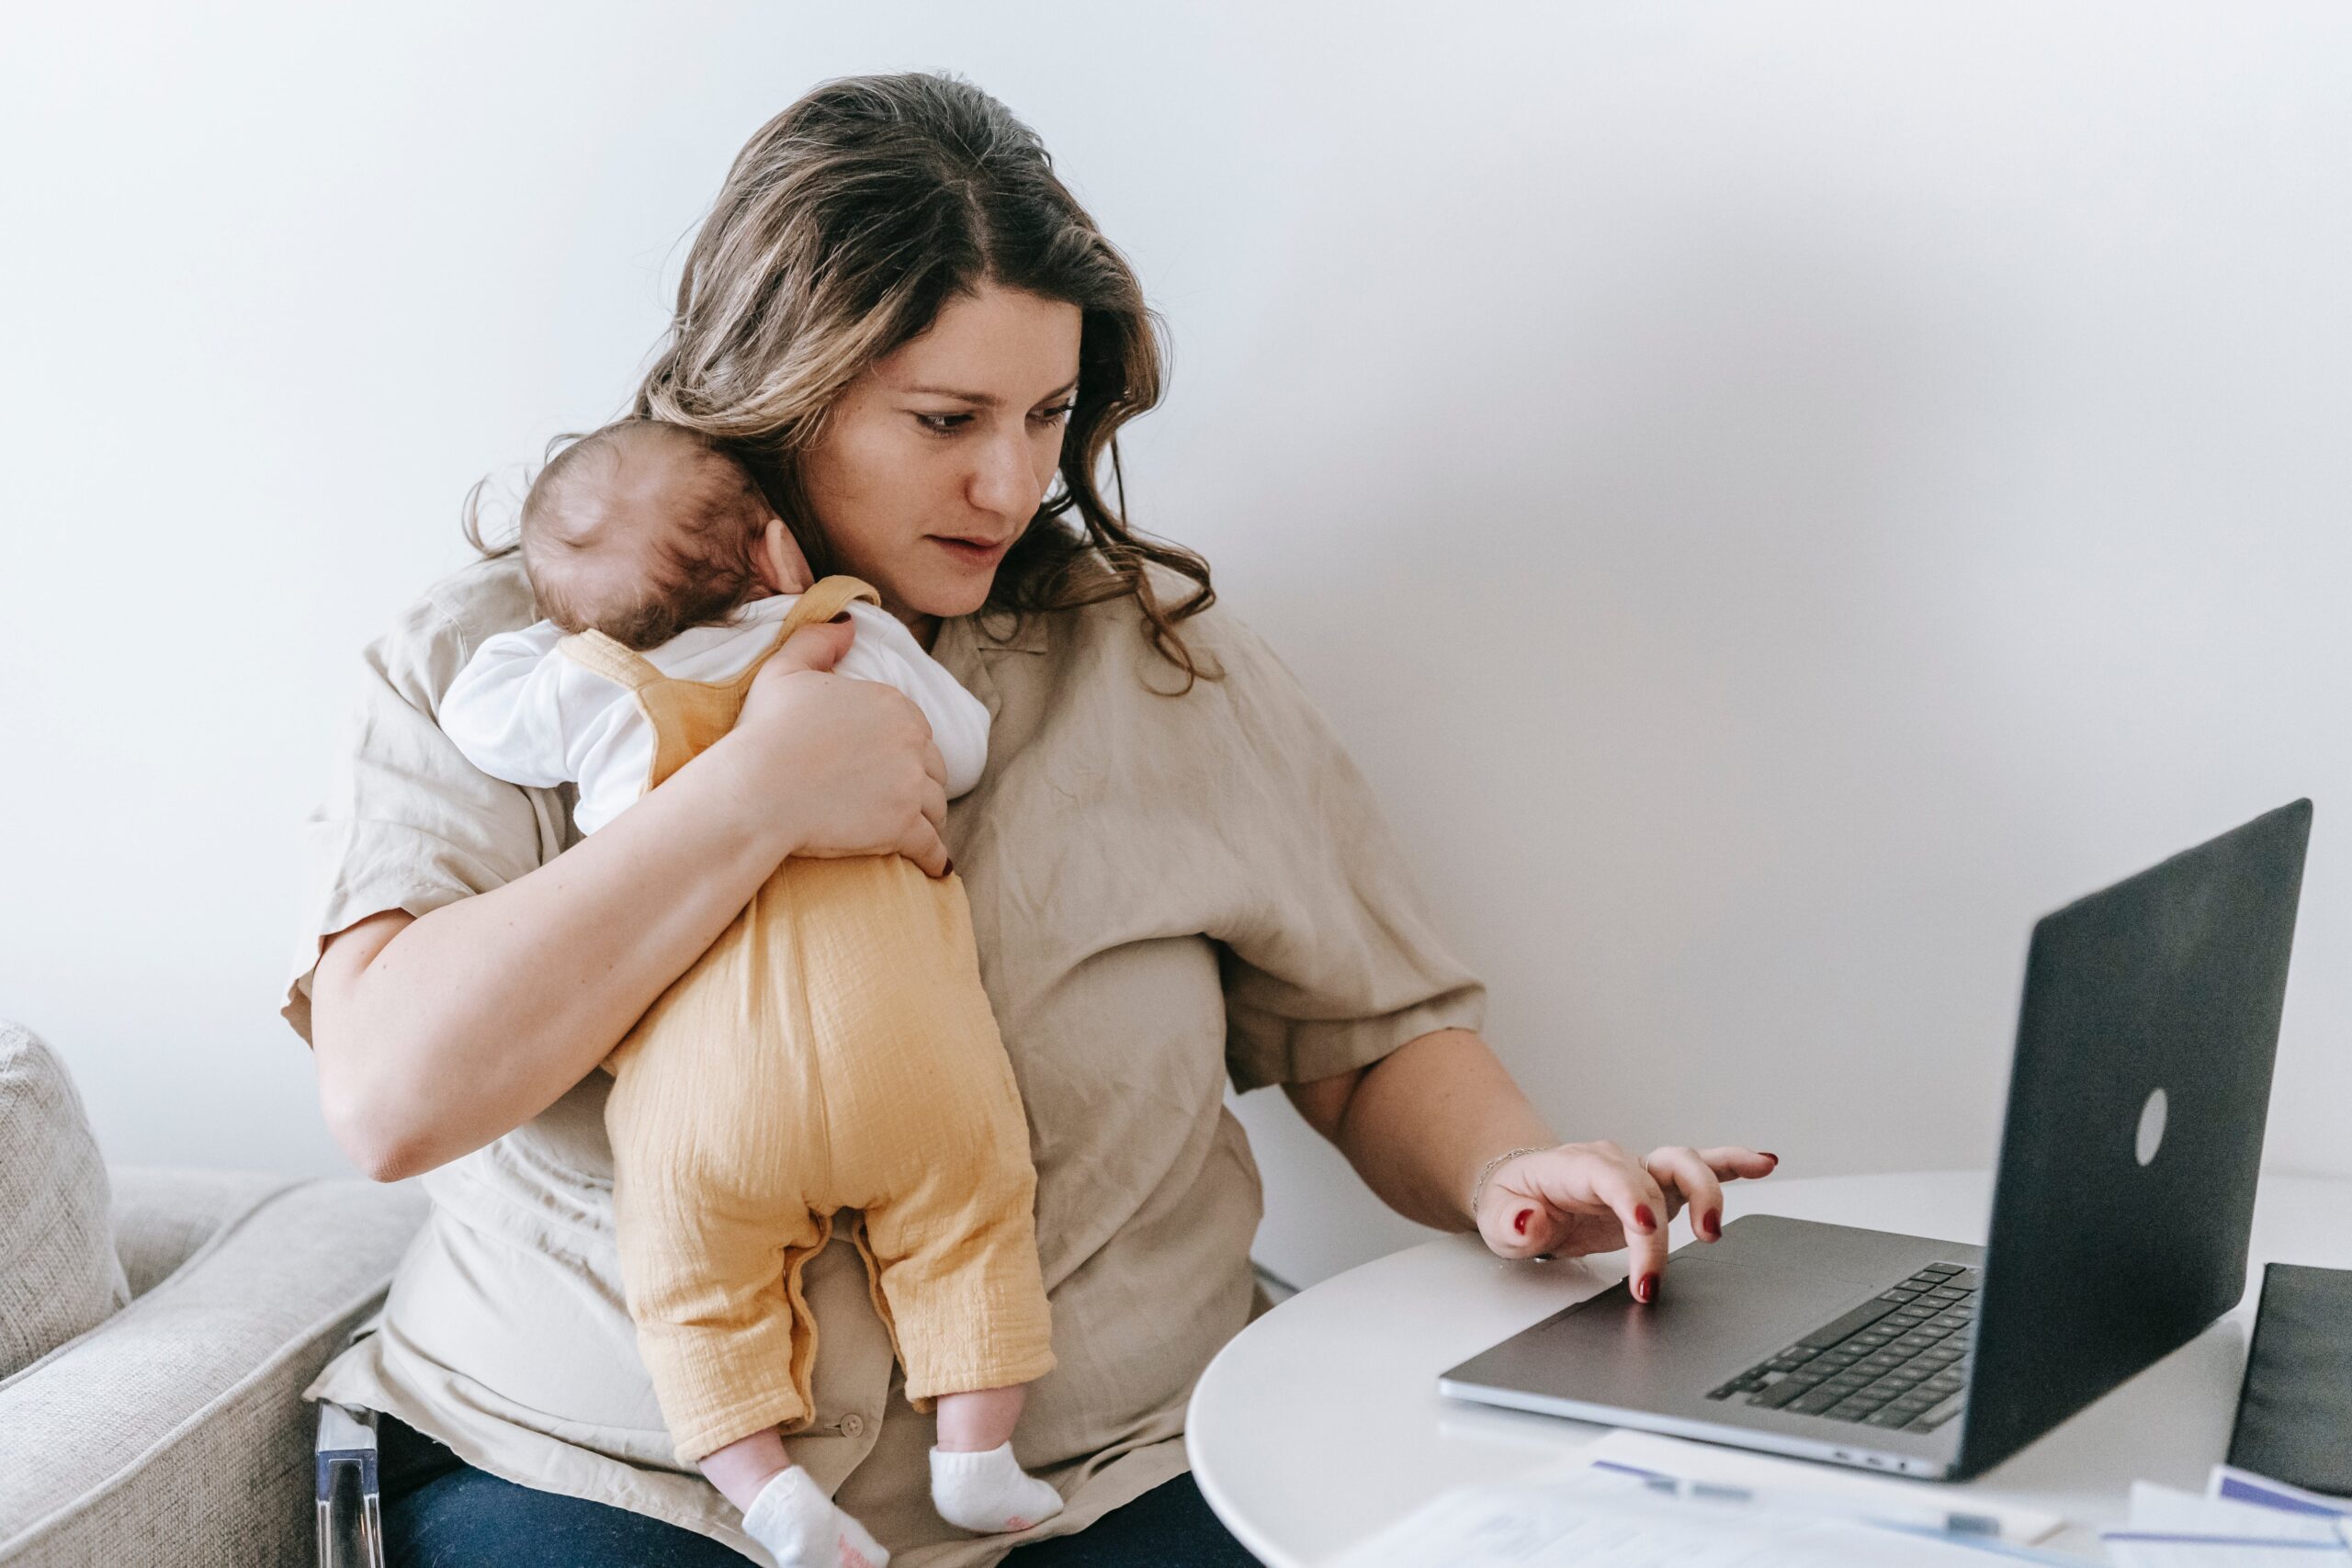 赤ちゃんを抱く女性がパソコンを操作している写真